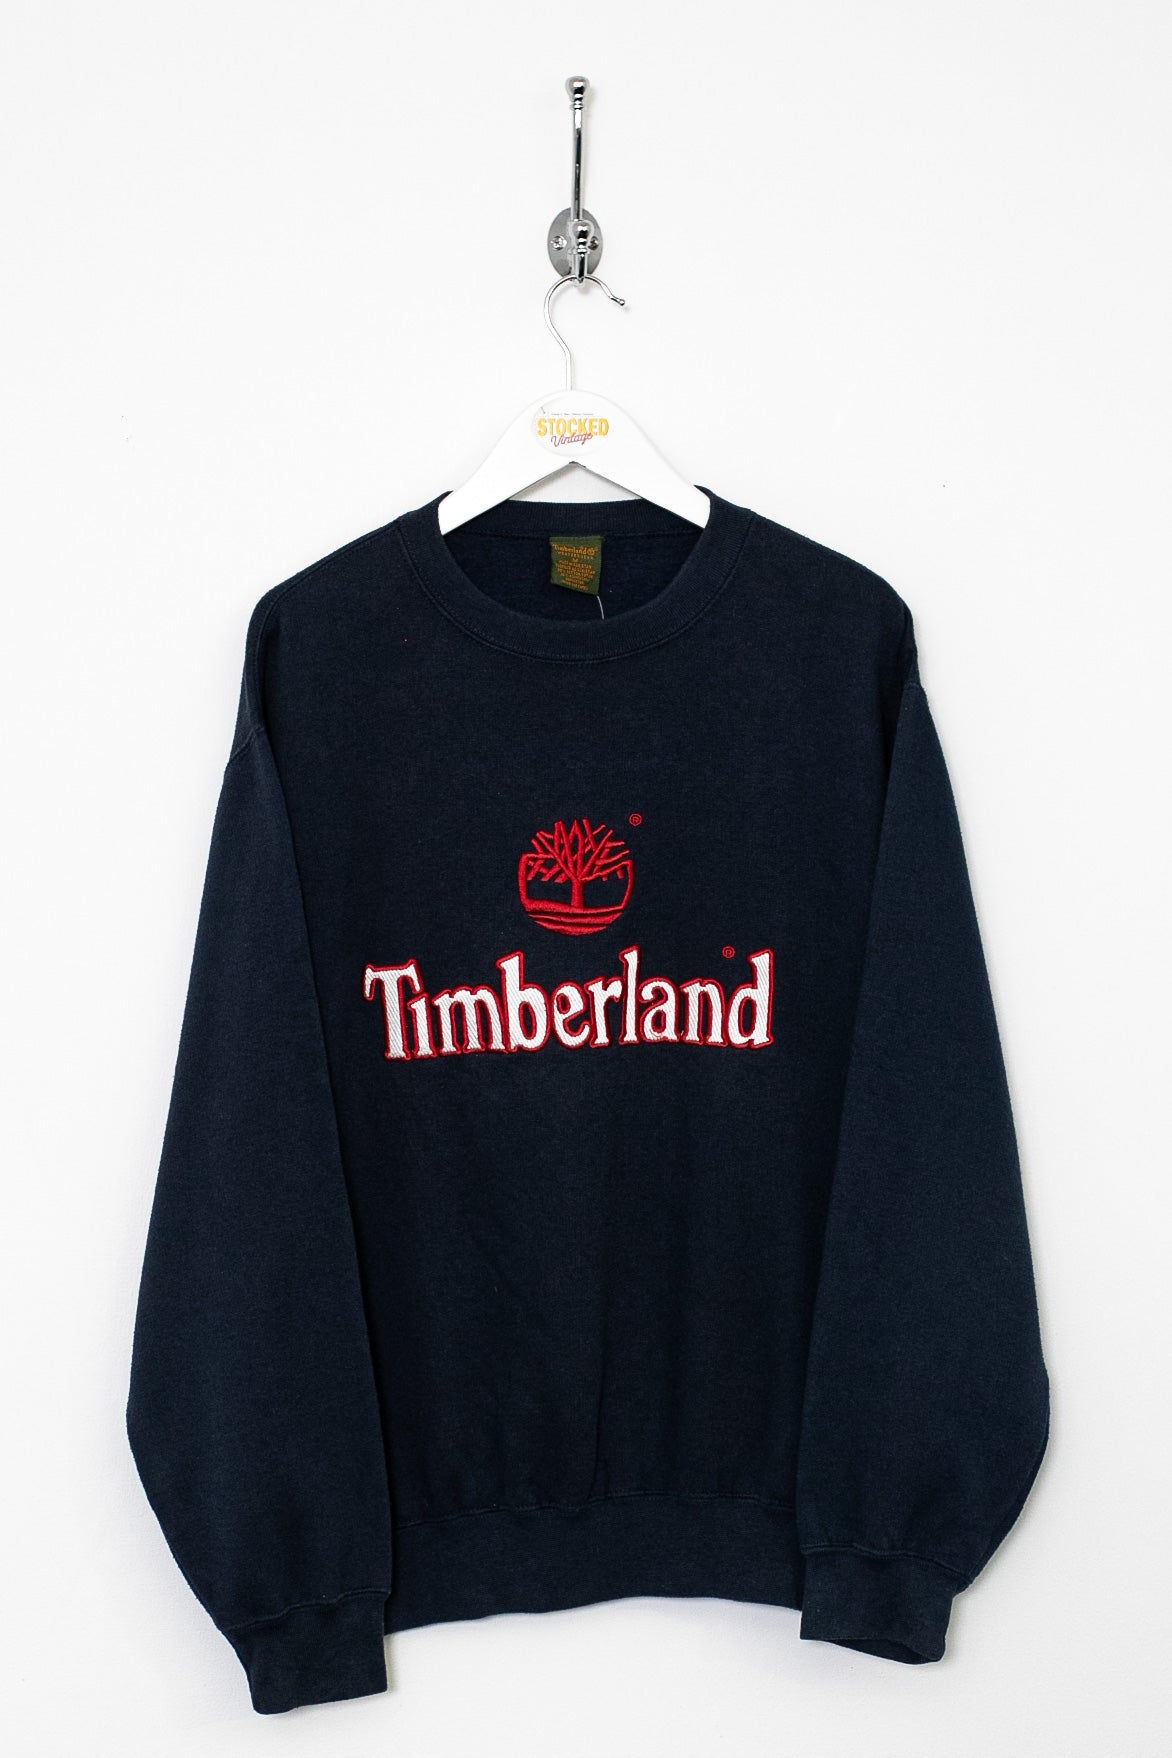 90s Timberland Sweatshirt (M)